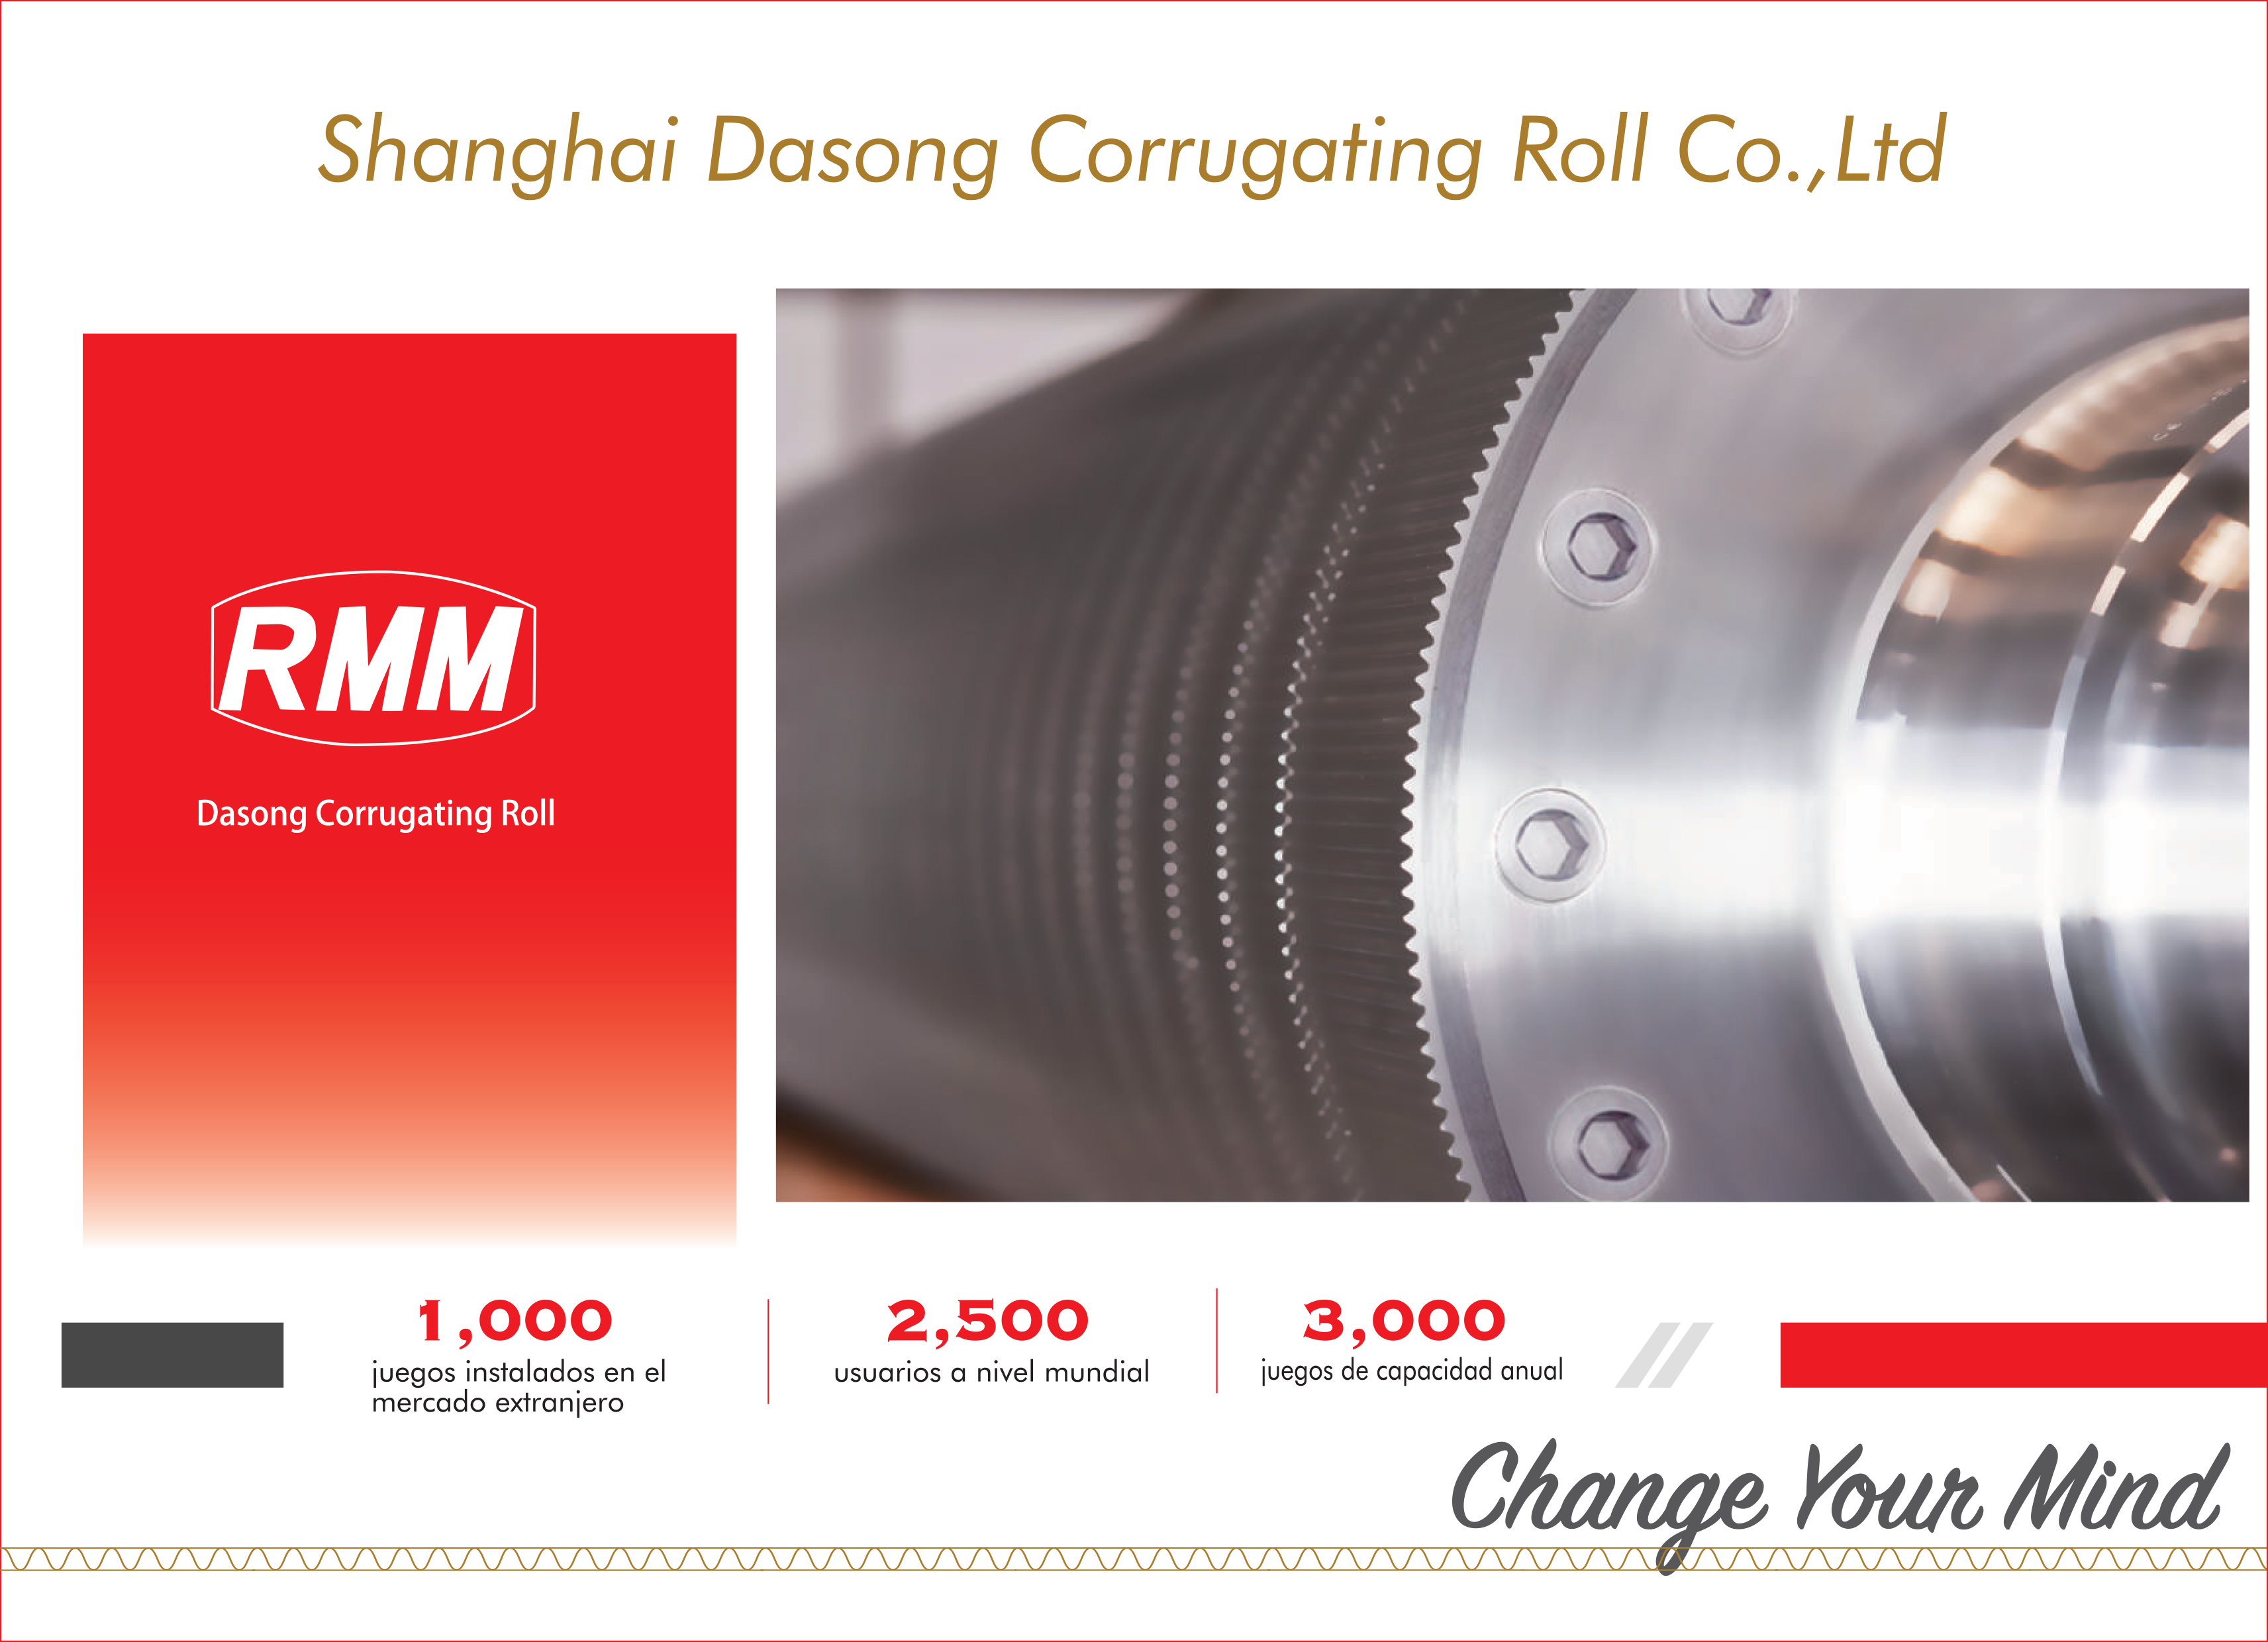 Obtendrá más información sobre los desarrollos tecnológicos de RMM en el catálogo Corrugating Roll Master